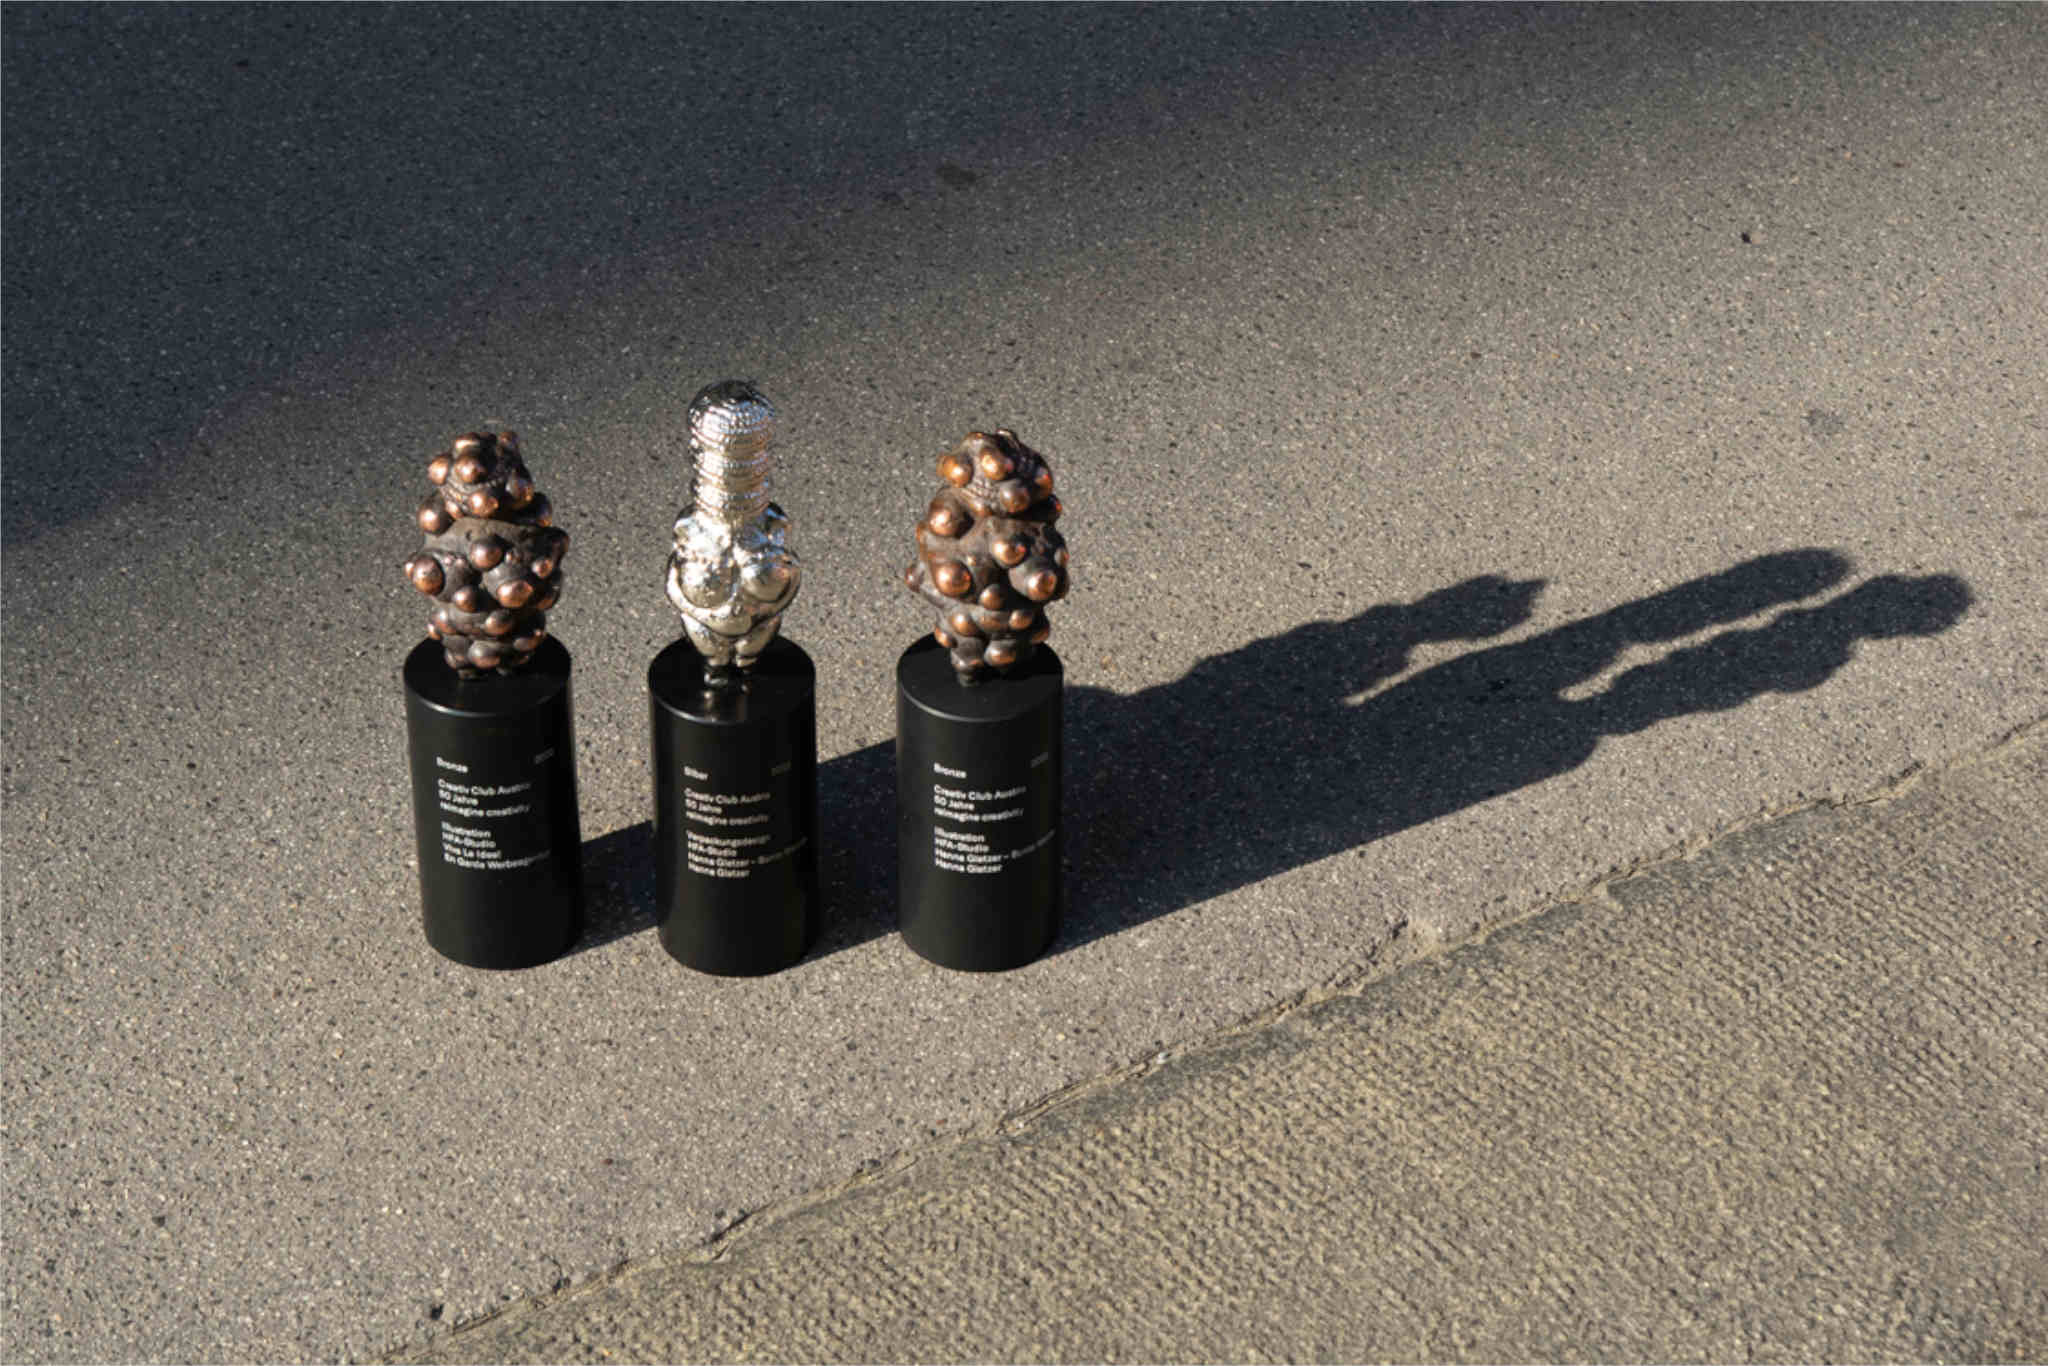 Das Naturweinprojekt erhielt vom Creativ Club Austria Silber für das Verpackungsdesign und Bronze für die Illustration. Foto beigestellt